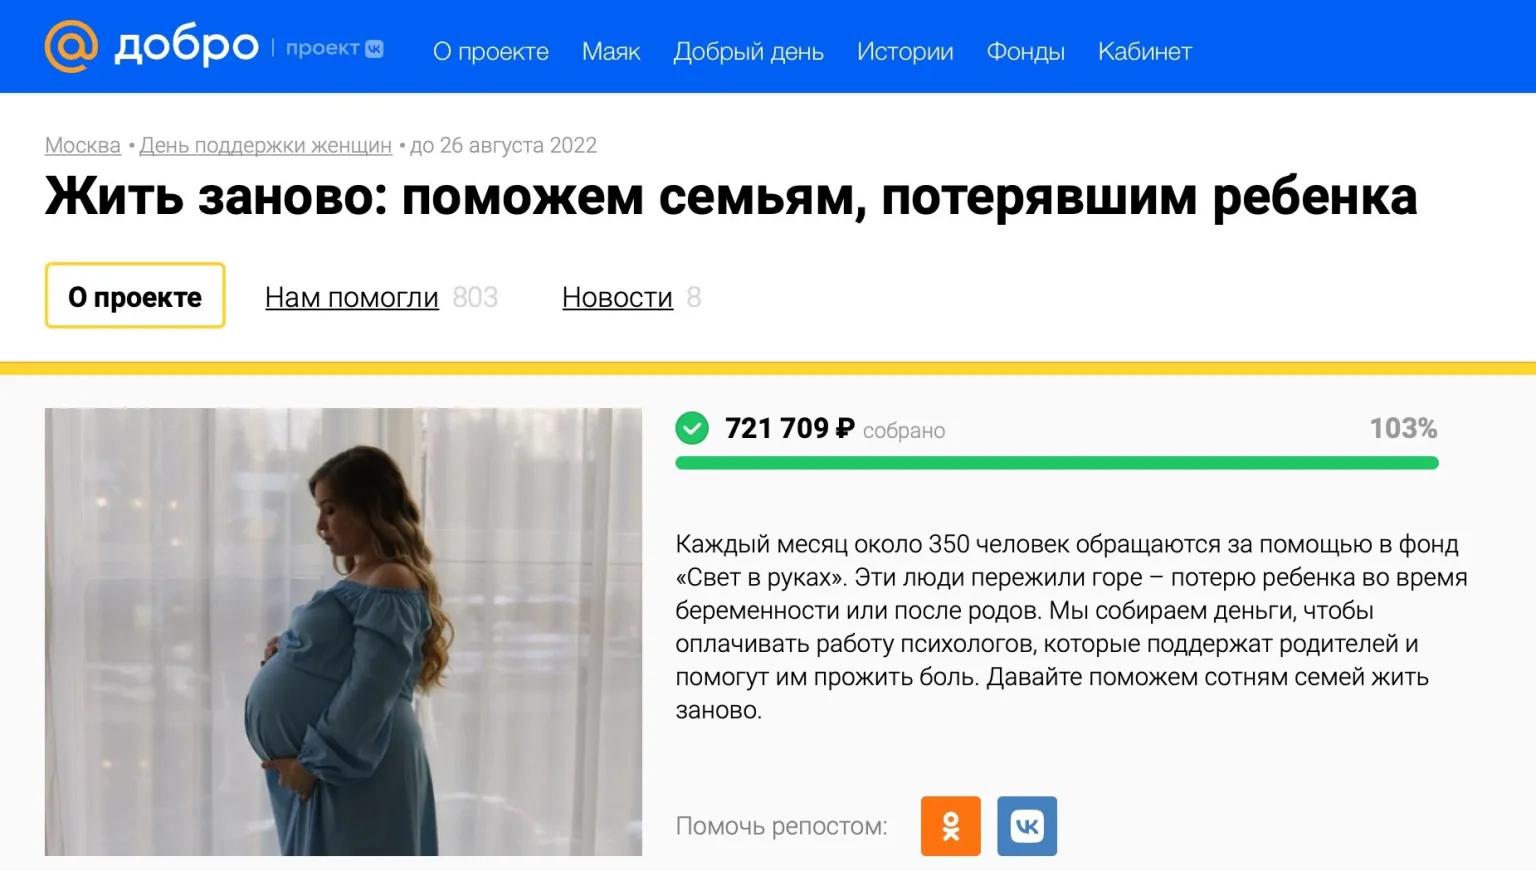 “Жить заново” – наш проект на портале Добро Mail.ru